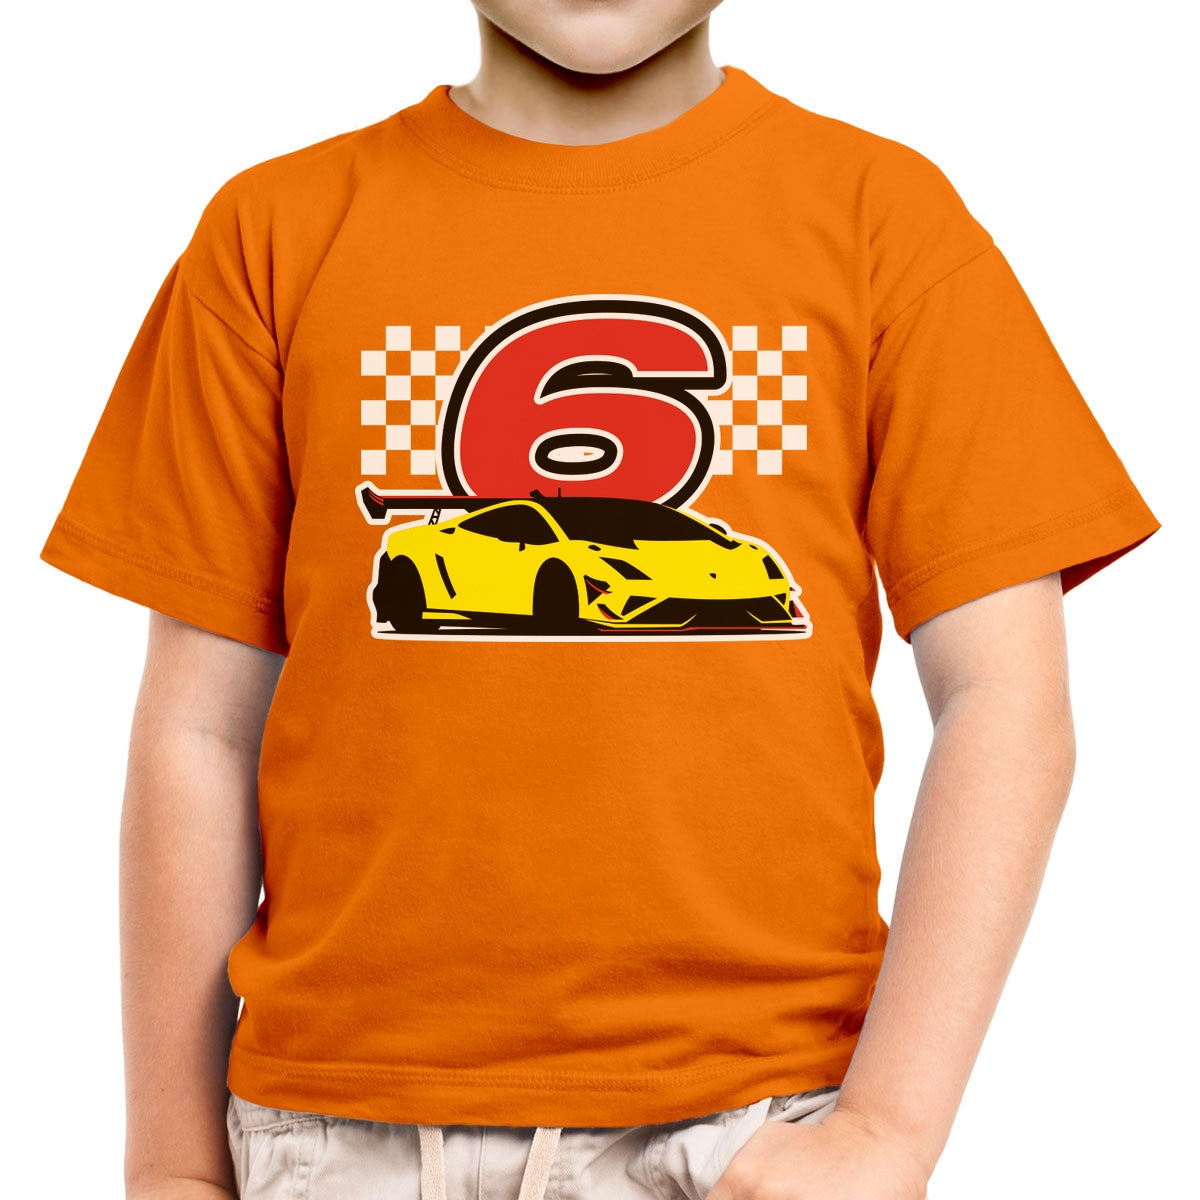 Geschenk für Jungs 6 Jahre Geburtstag mit Auto Kinder Jungen T-Shirt